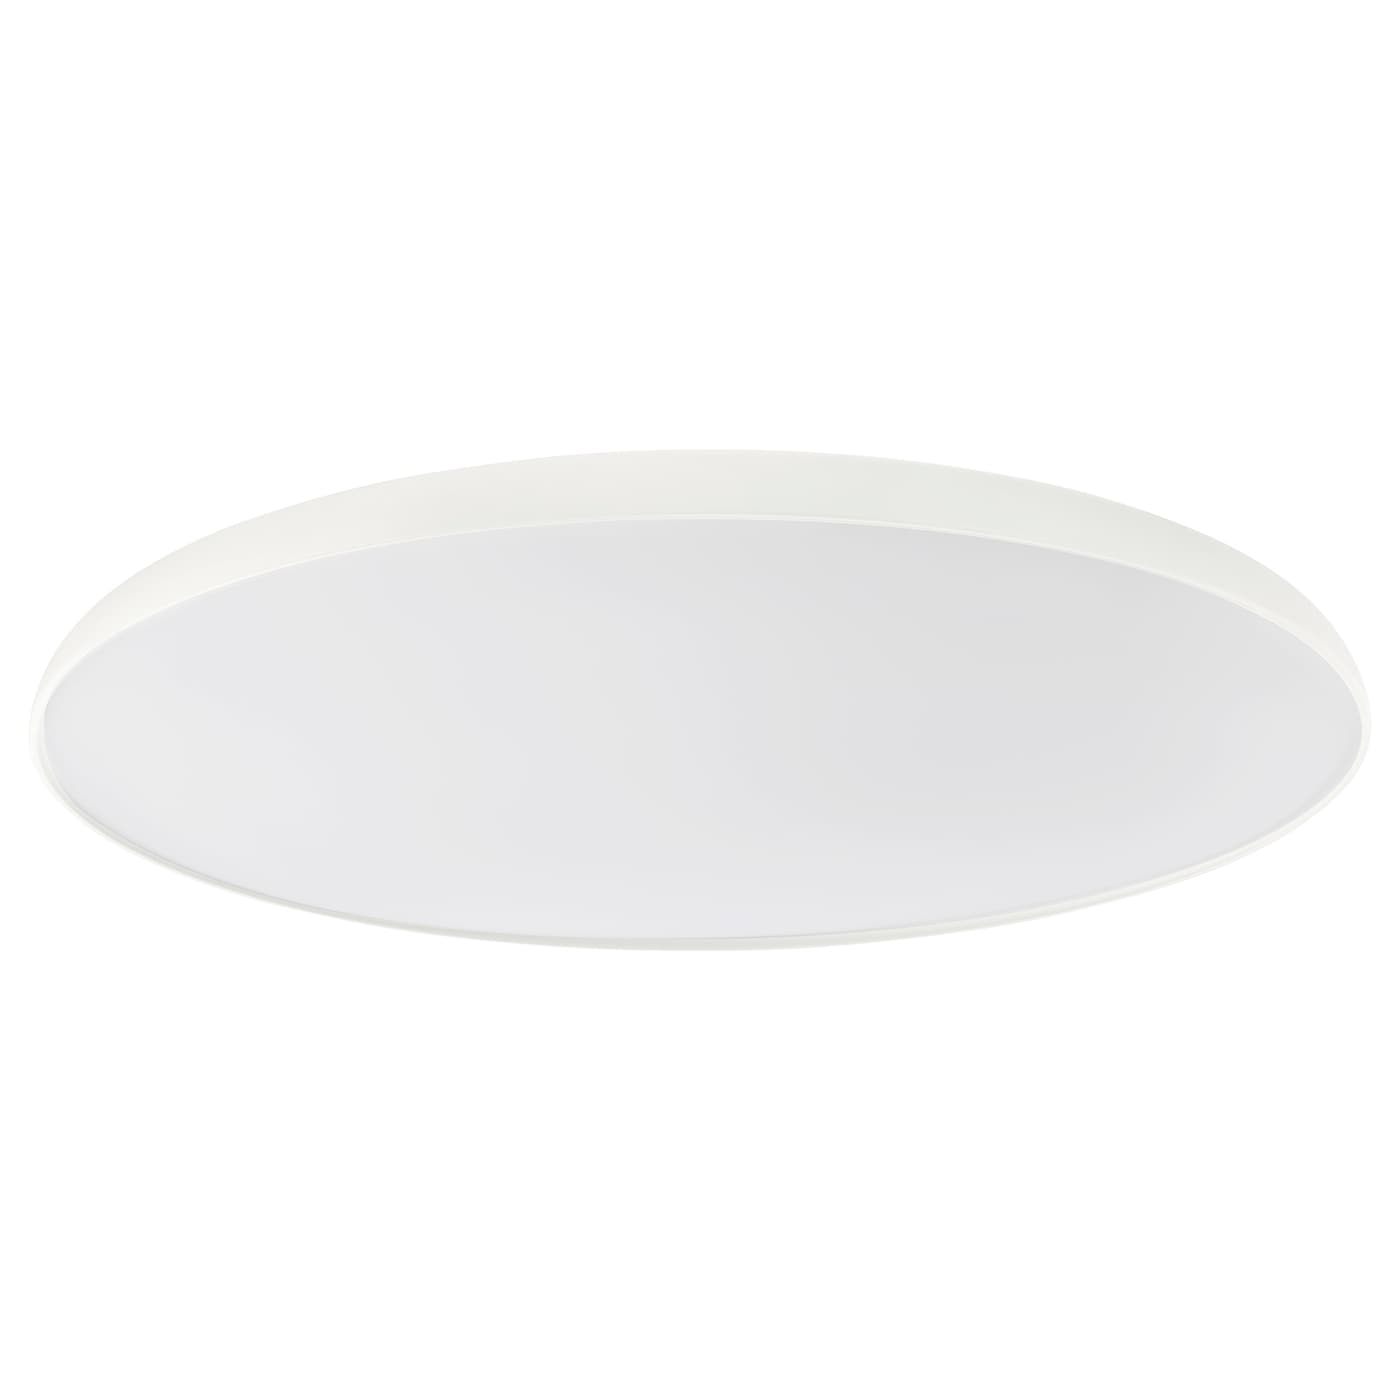 Потолочные светильники - NYMÅNE /NYMАNE IKEA/ НИМОНЕ ИКЕА, 45 см, белый